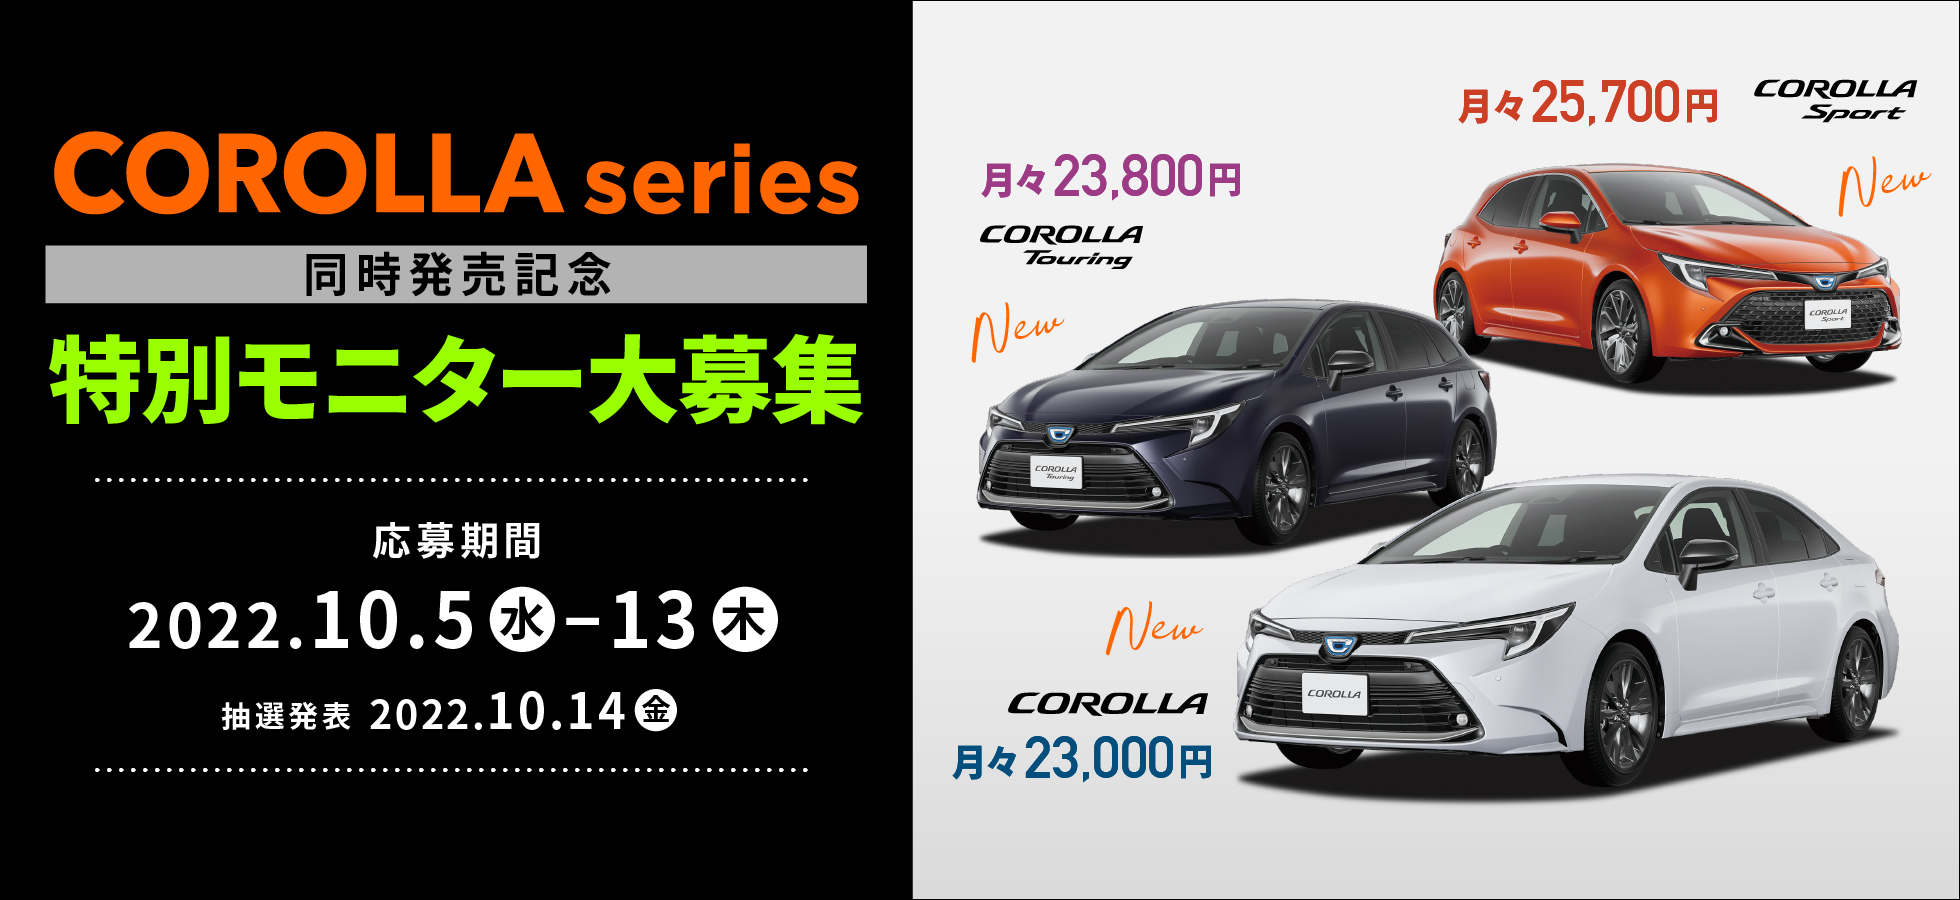 カローラシリーズ3車種同時発売記念 5年乗り特別モニターキャンペーン